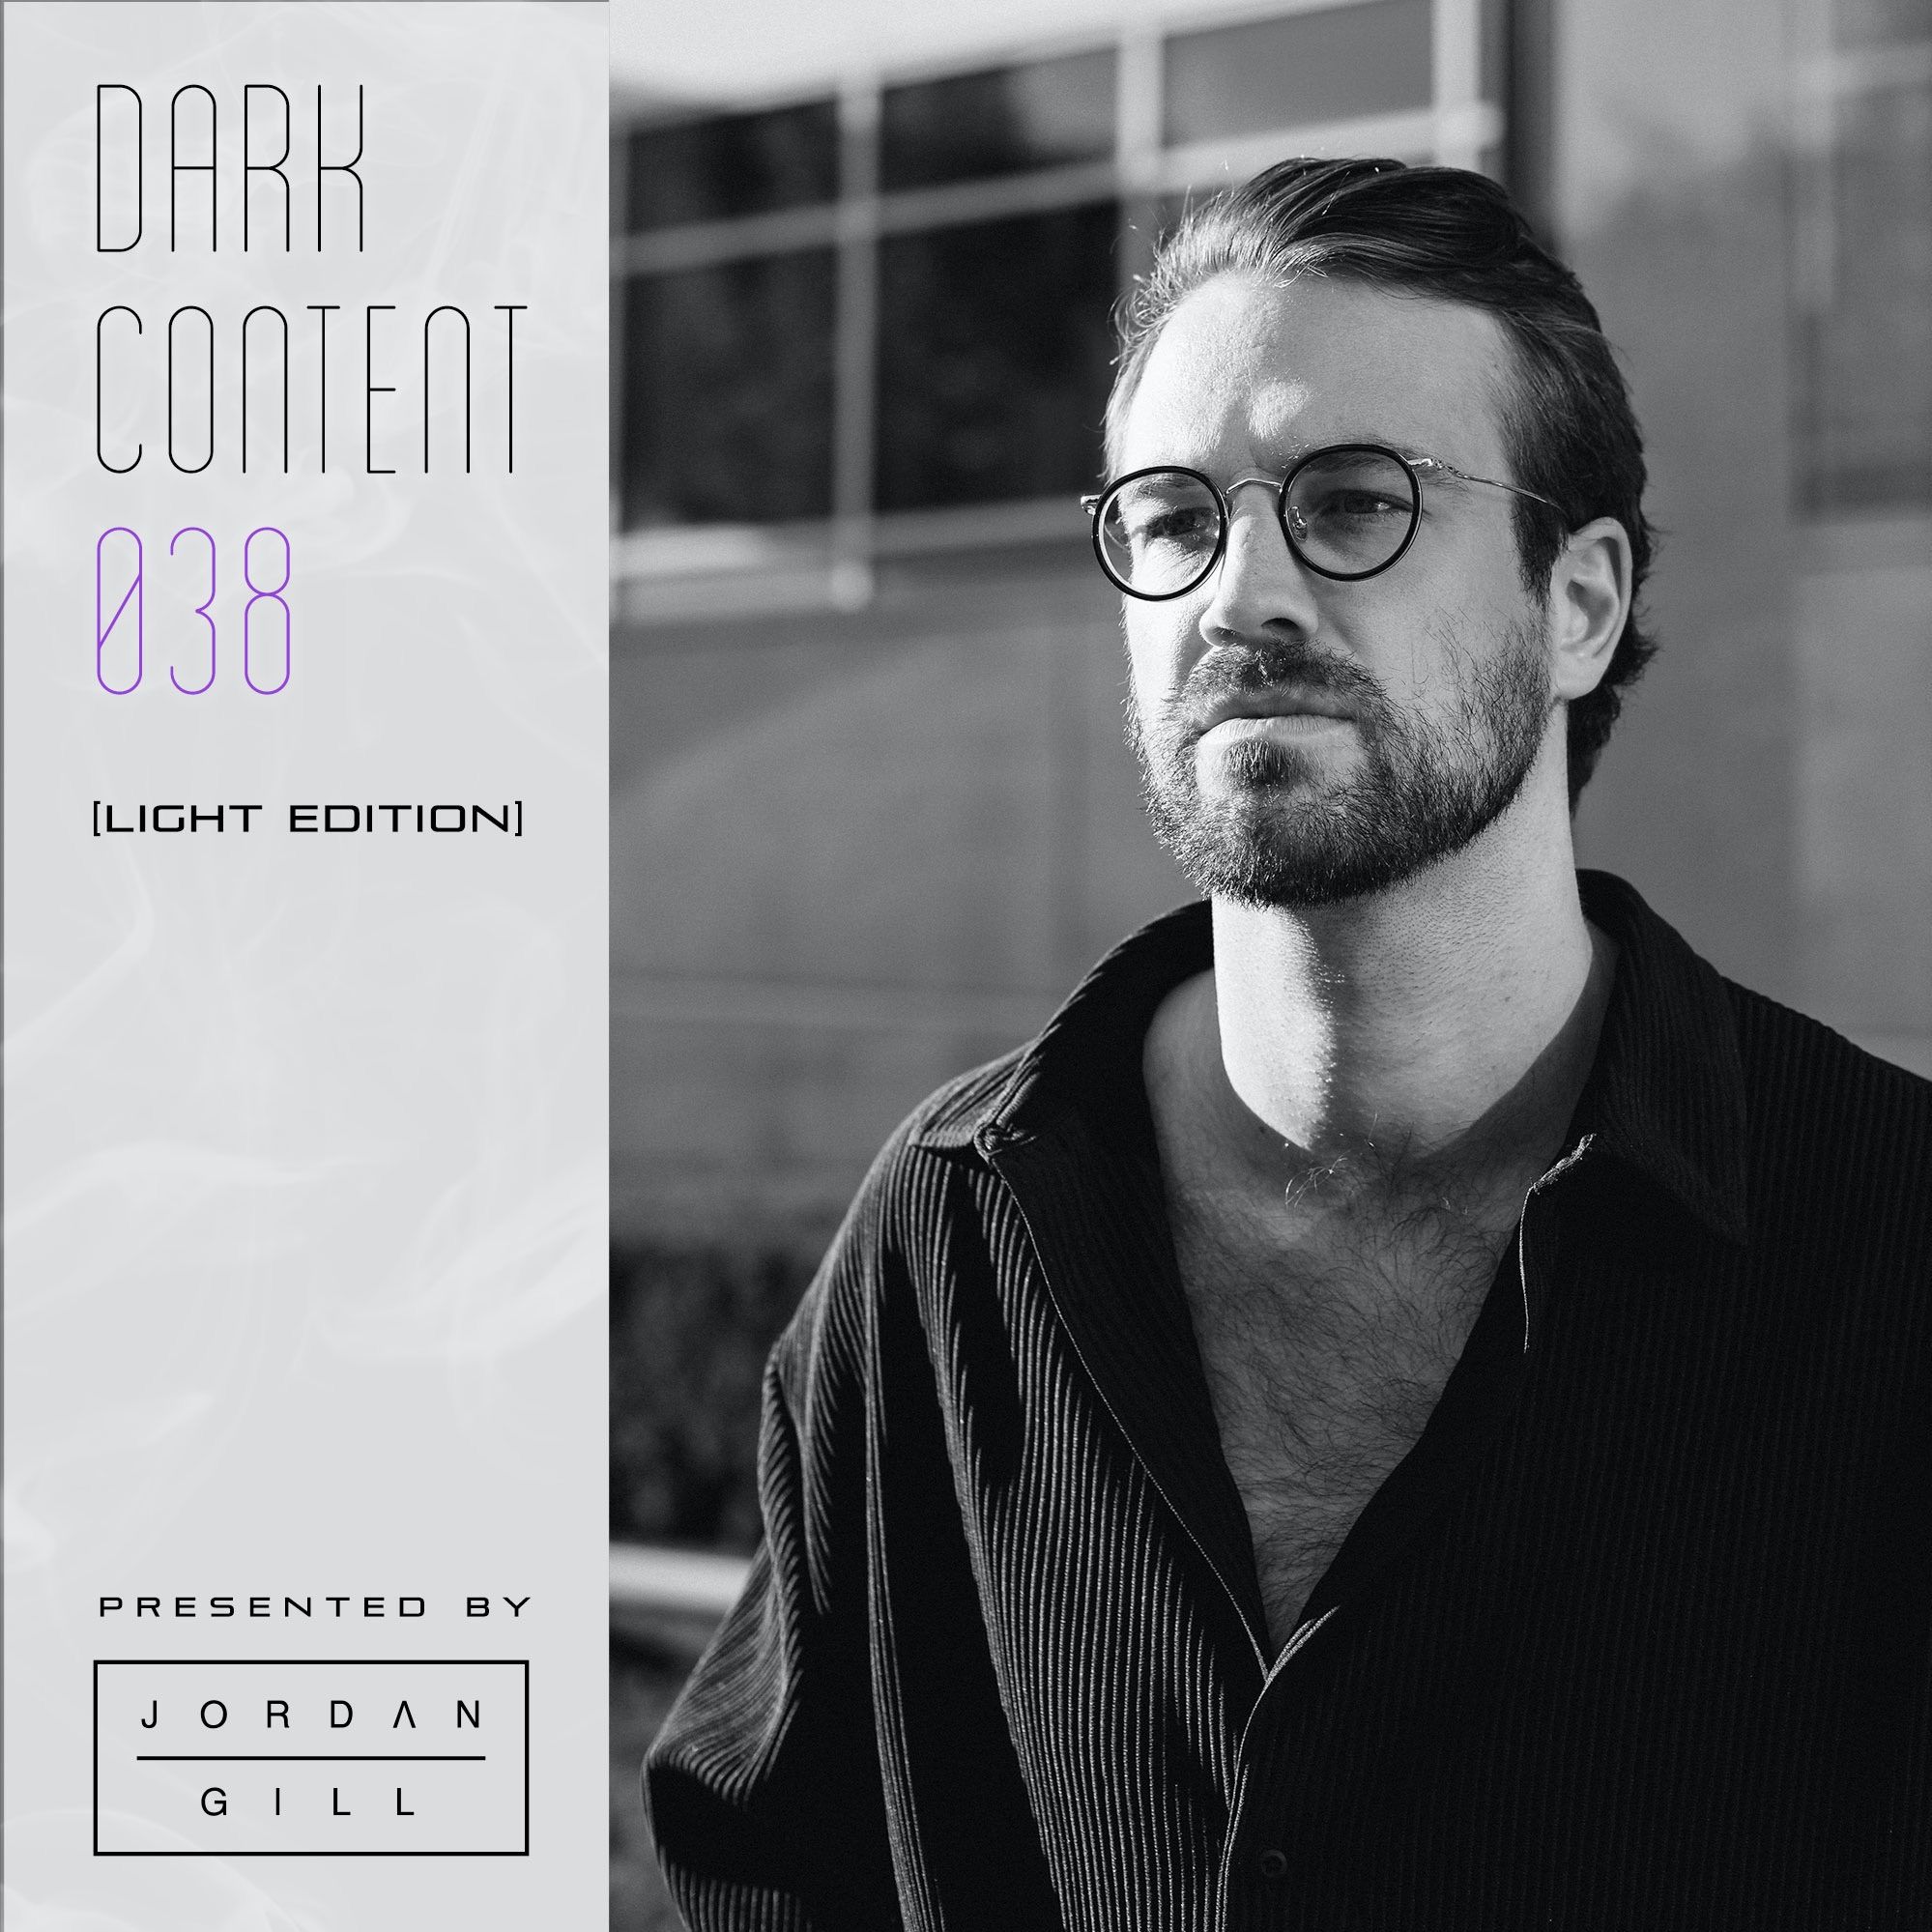 ดาวน์โหลด Dark Content 038 [Light Edition]